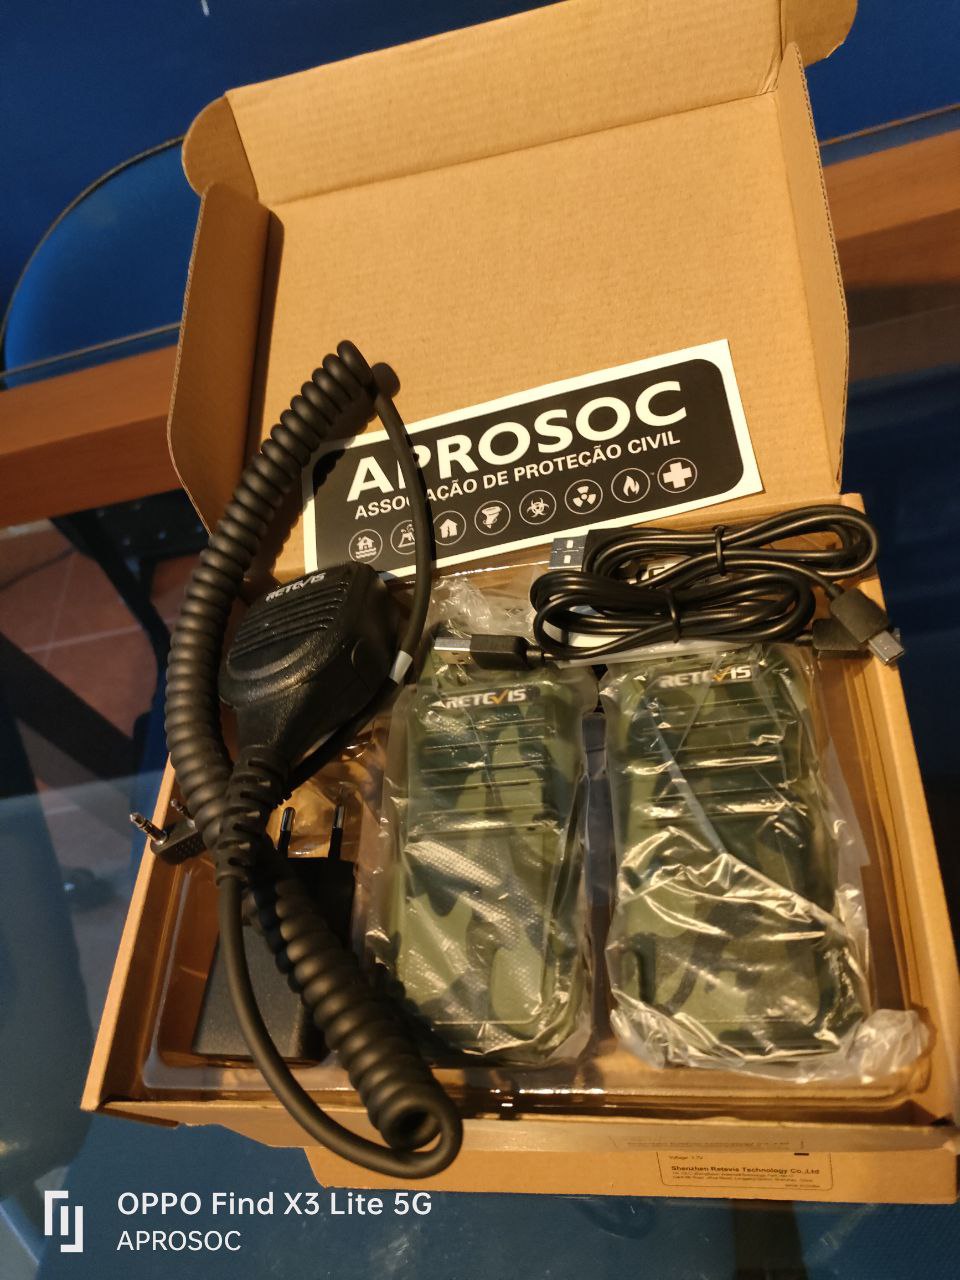 APROSOC entrega mais 6 rádios PMR446 a pessoas desprotegidas